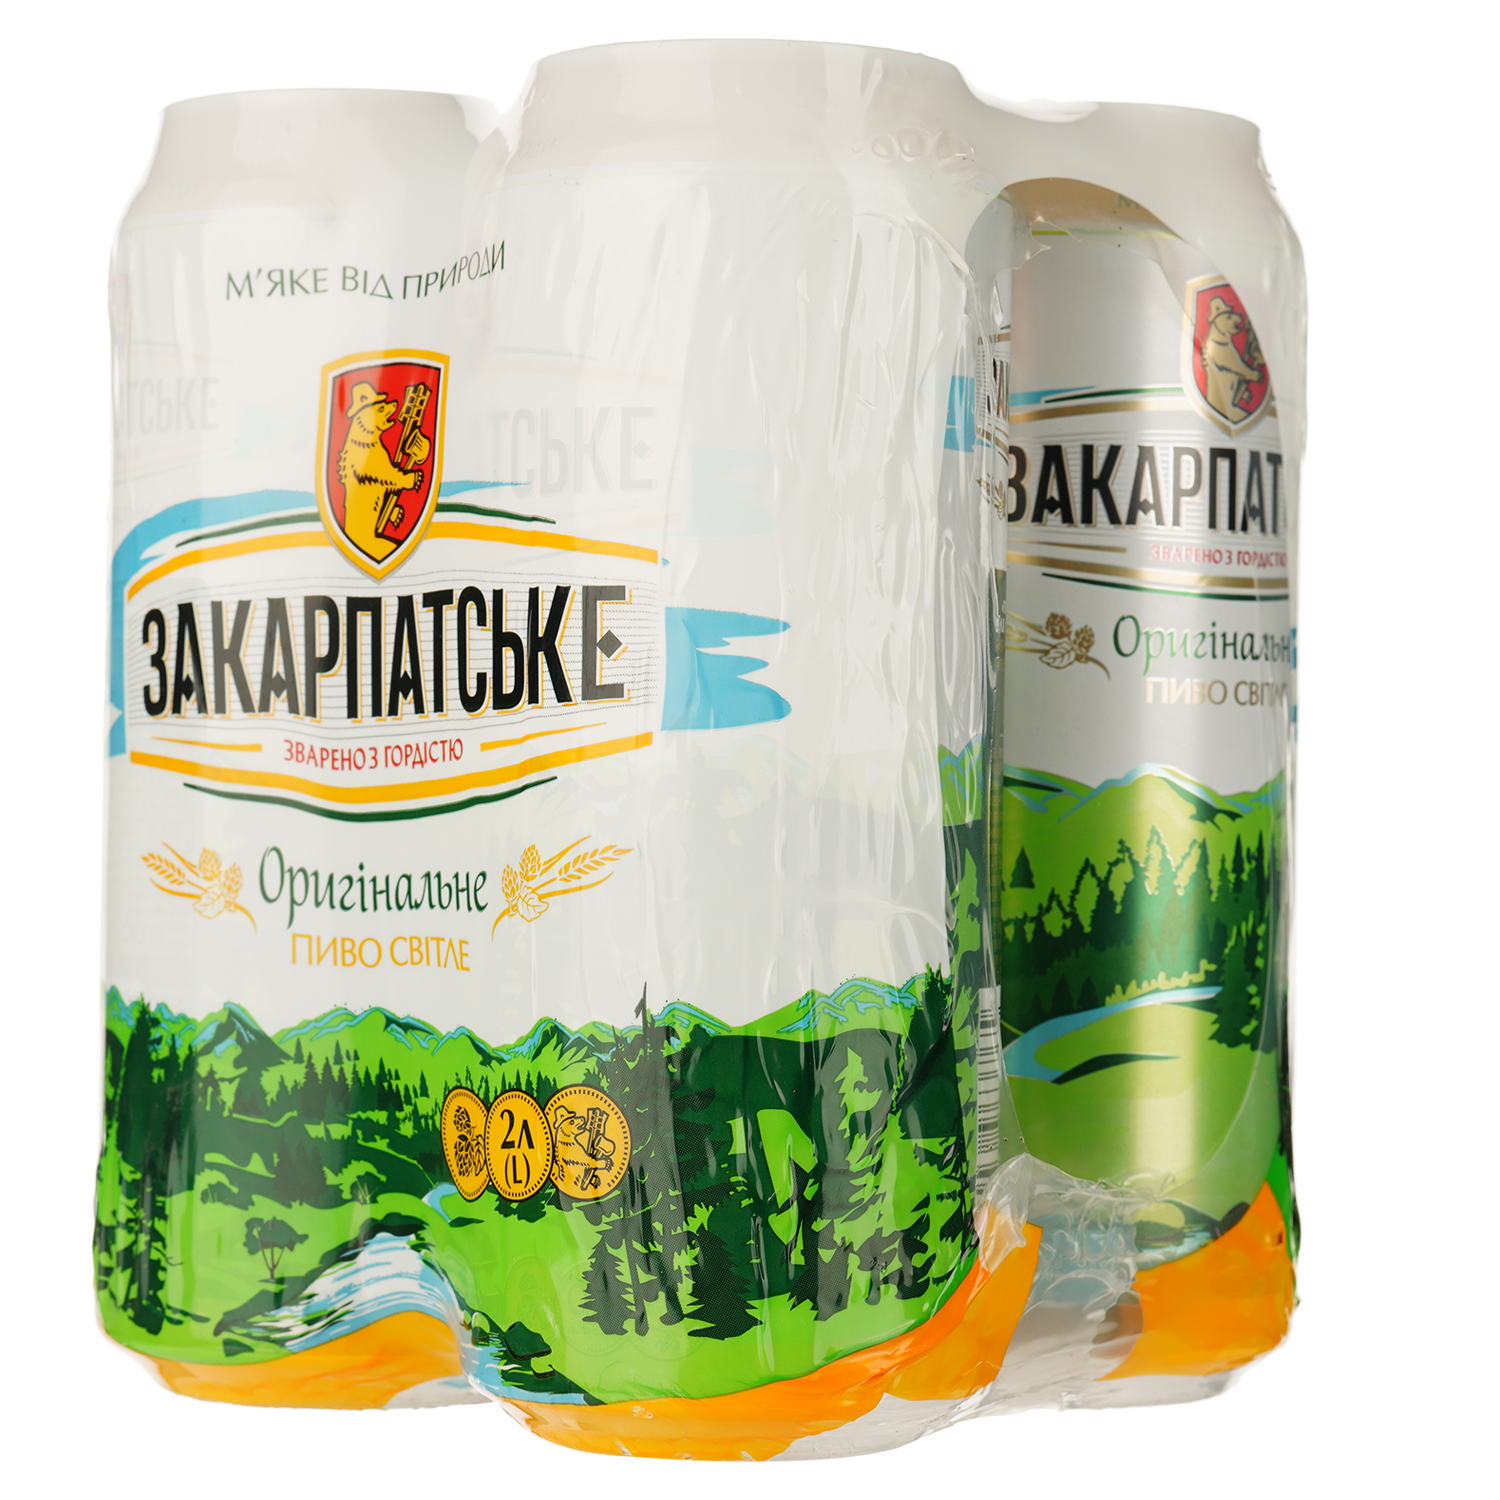 Пиво Перша приватна броварня Закарпатське, світле, фільтроване 4.1% з/б 4 шт. по 0.5 л (825769) - фото 2